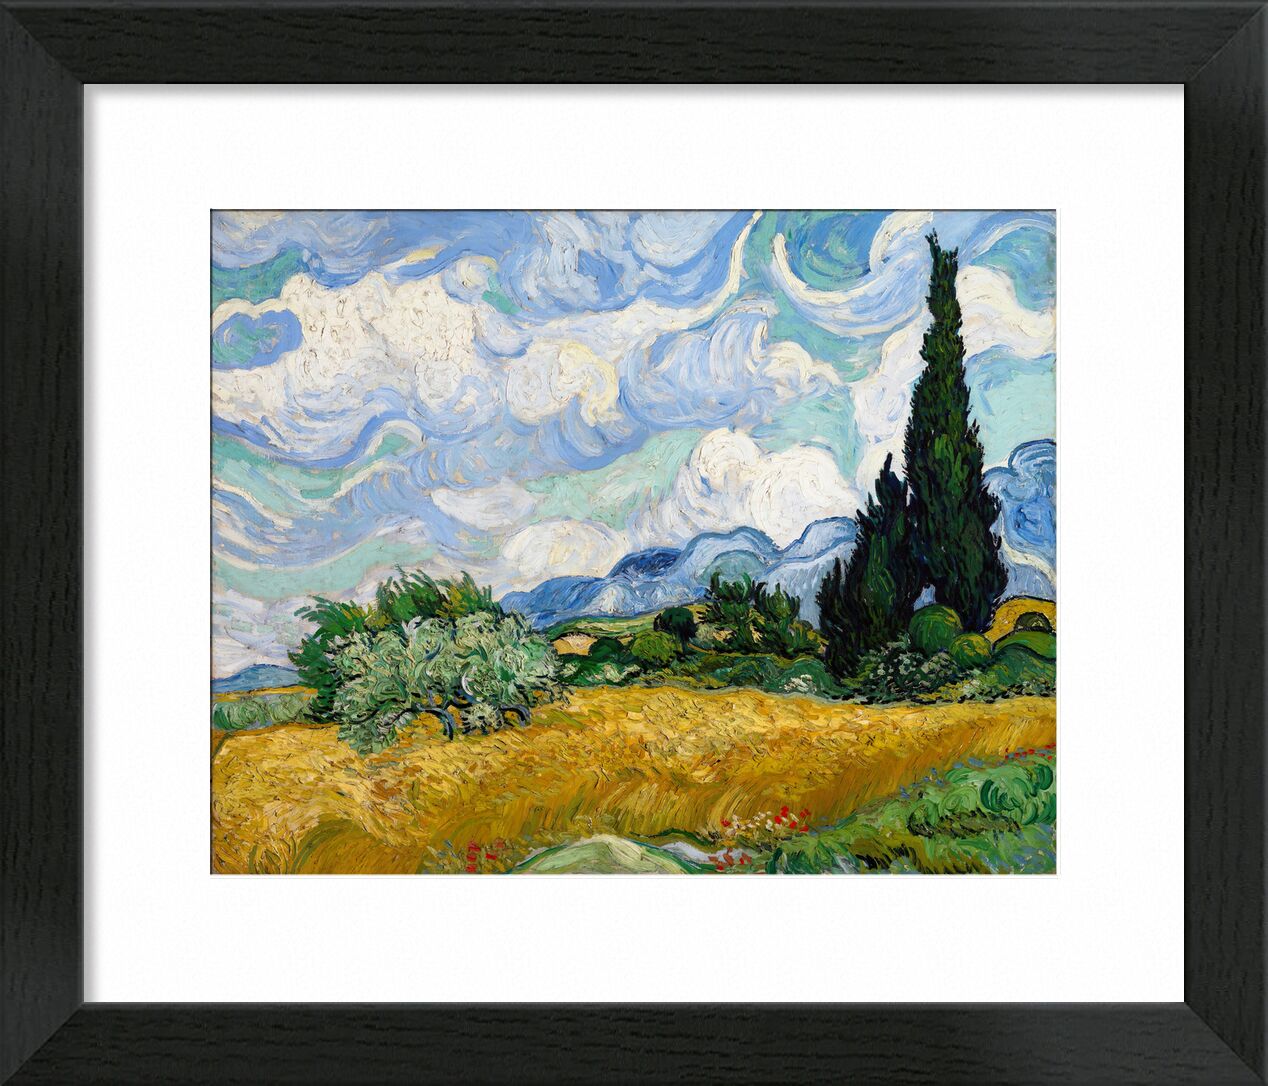 Wheat Field with Cypresses - VINCENT VAN GOGH 1889 von Bildende Kunst, Prodi Art, Malerei, Wolken, Baum, Wiese, grün, Natur, Weizenfelder, Zypresse, Felder, Busch